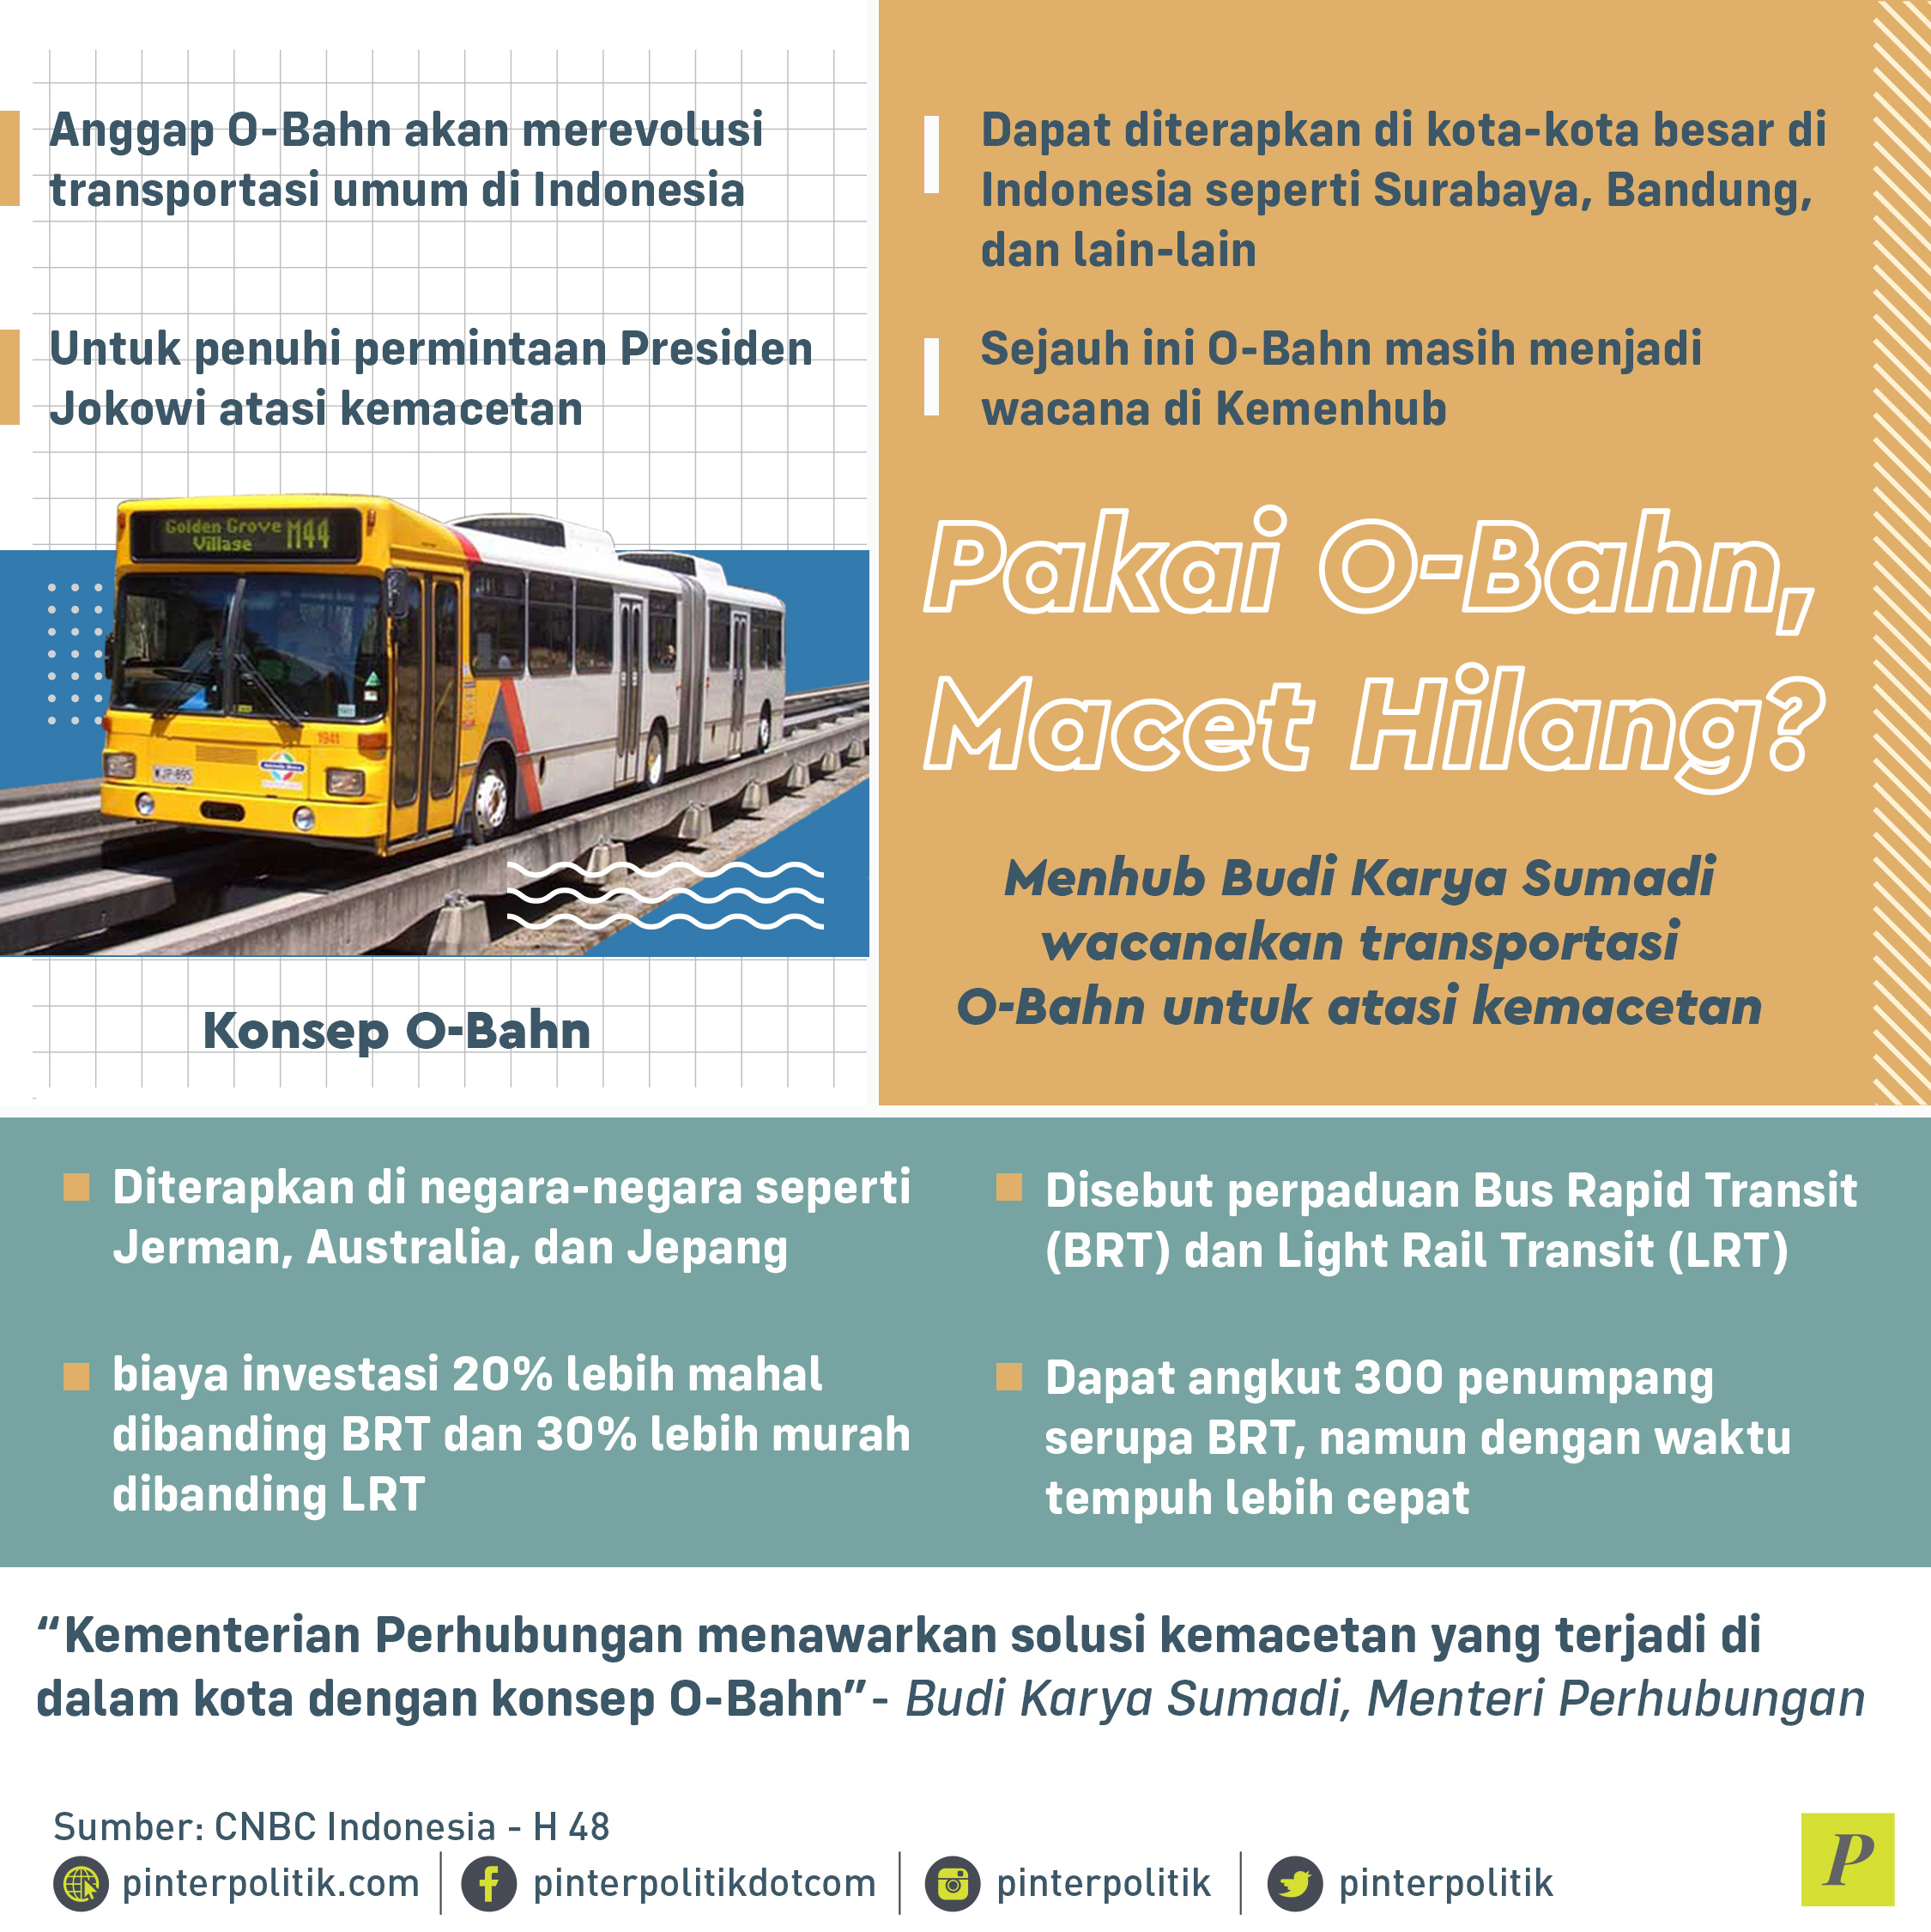 O-Bahn akan merevelosi transportasi umum di Indonesia